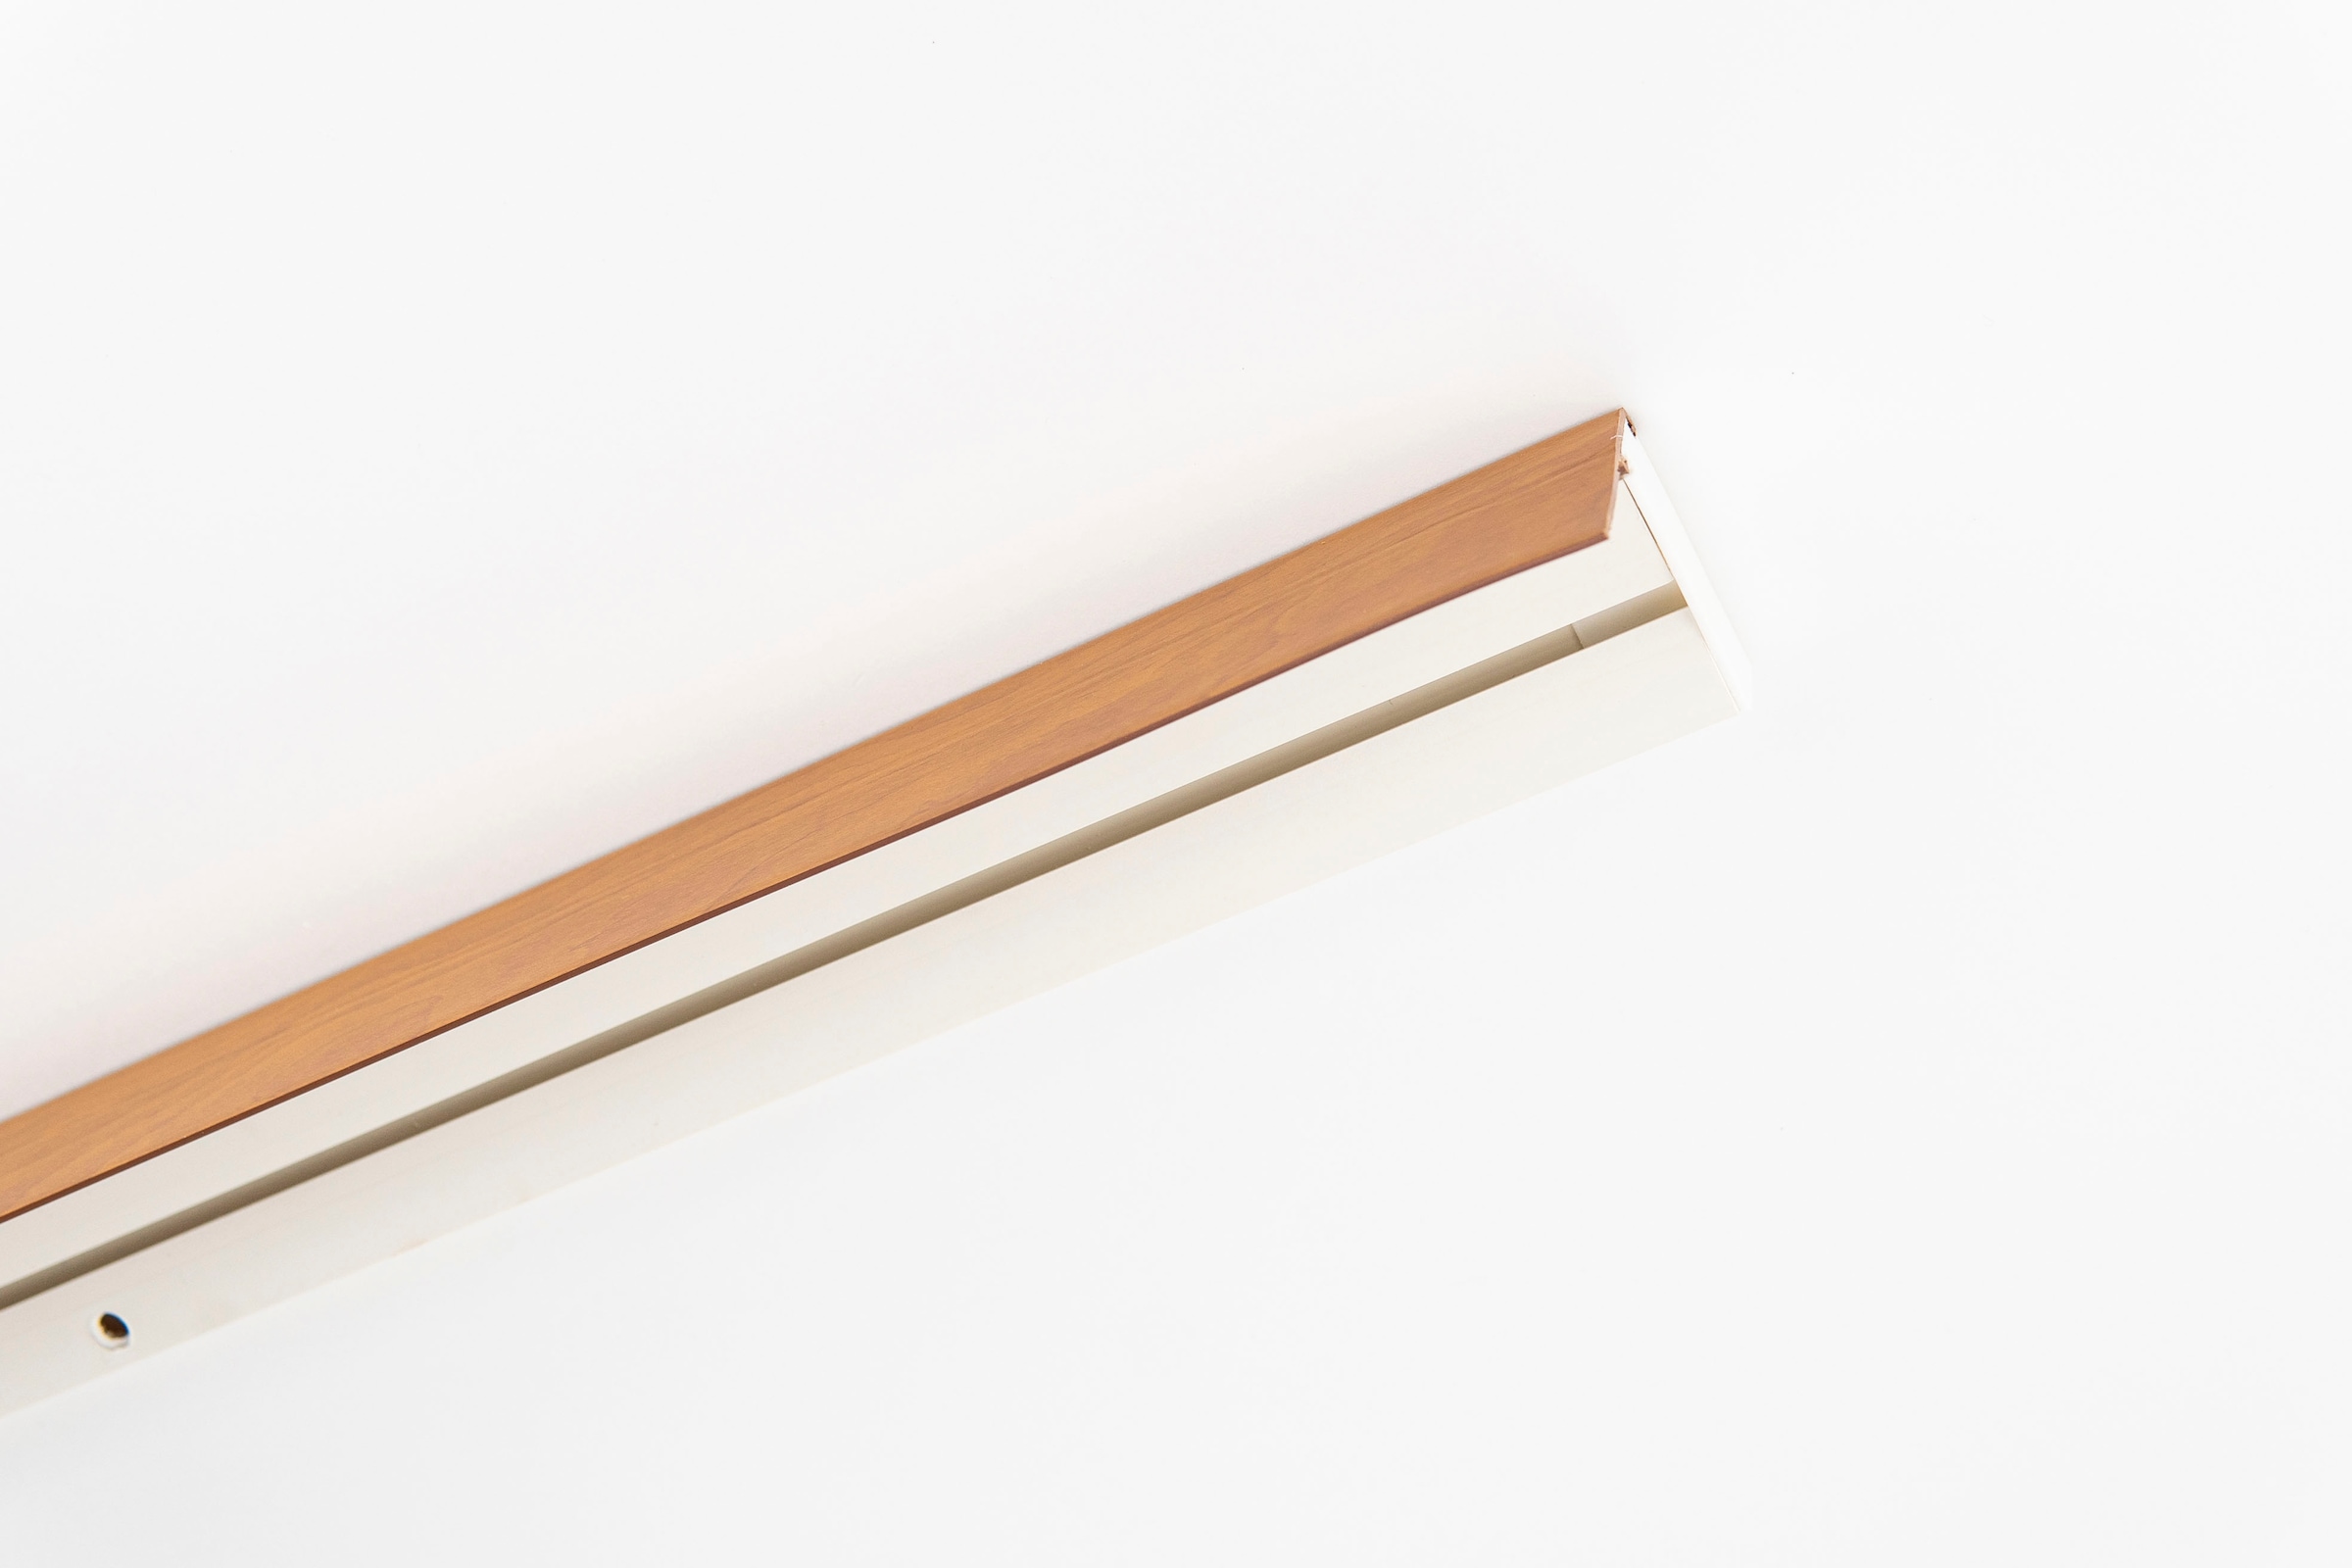 GARESA Gardinenschiene »Kunststoffschiene Blende«, verlängerbar, bei OTTO online läufig-läufig, 3 Deckenmontage, mit einfache schlicht Wunschmaßlänge, Montage